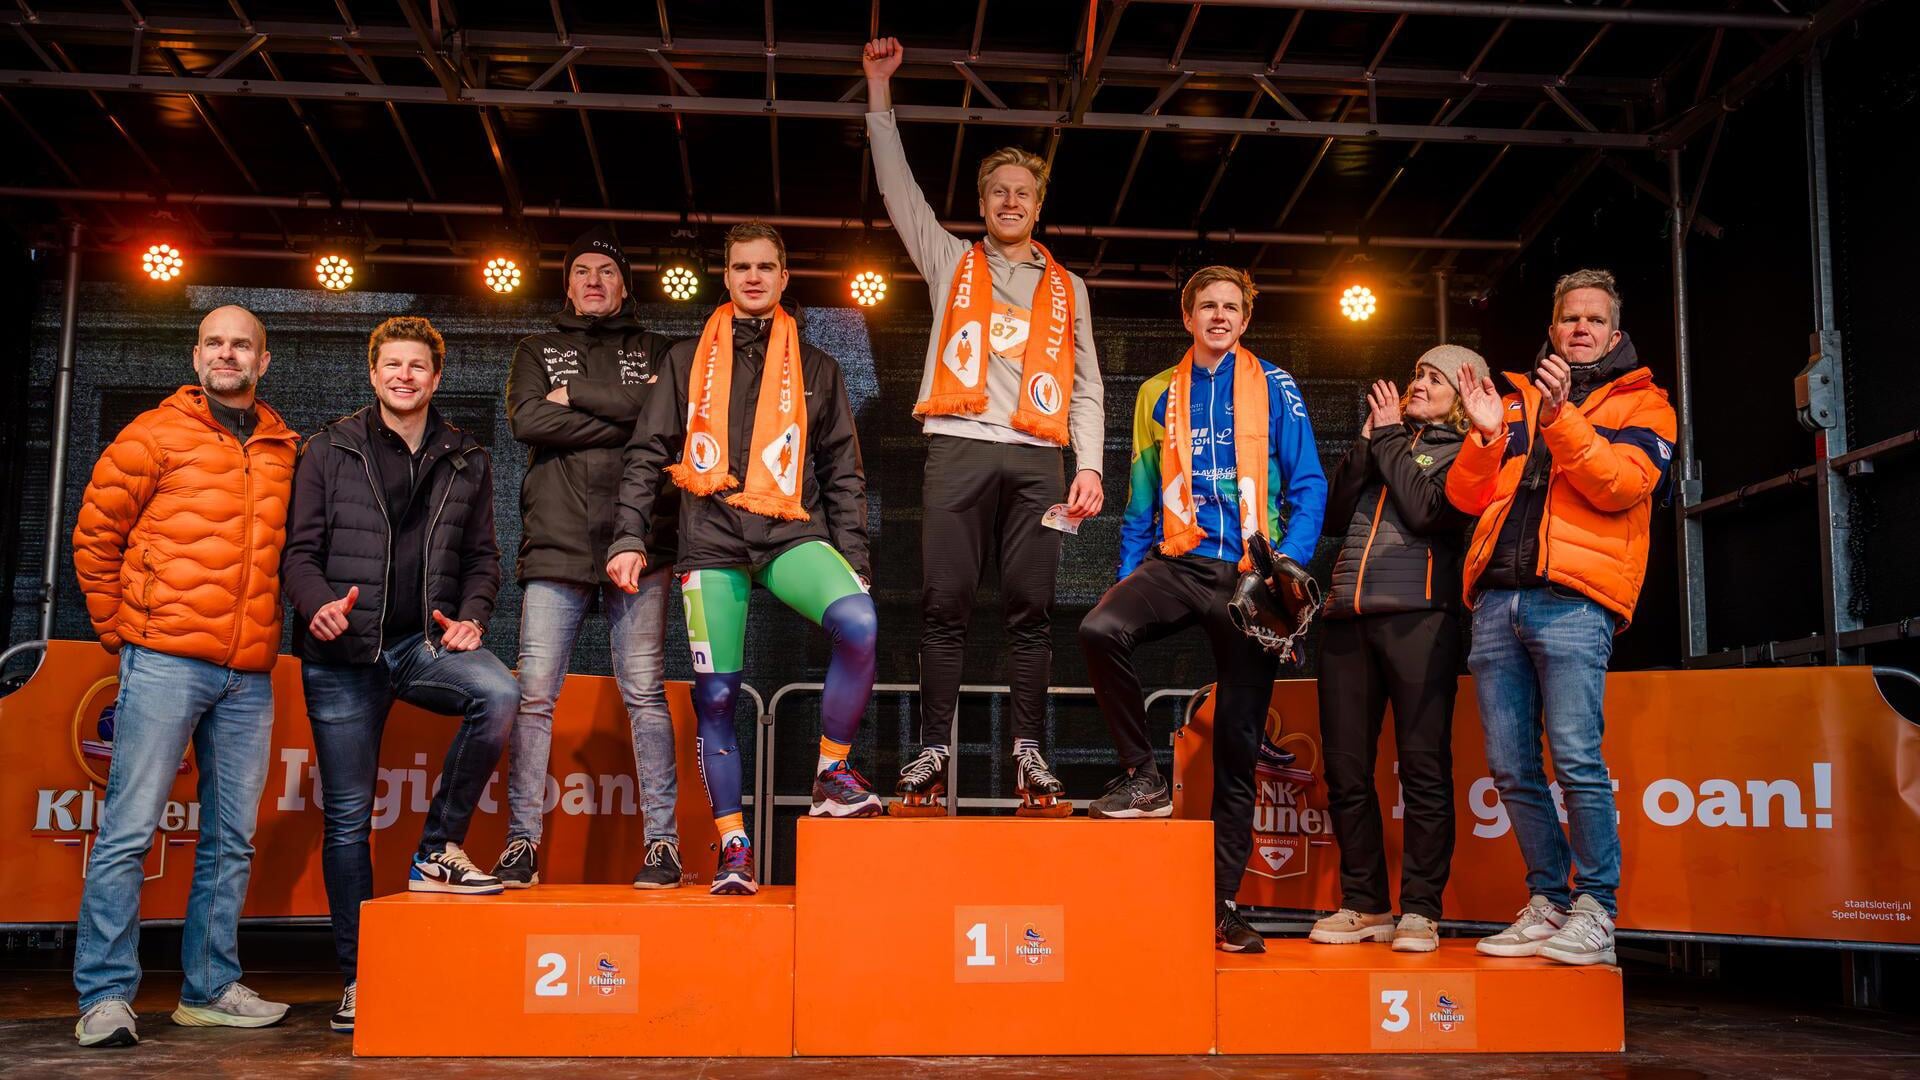 De winnende kluners omringd door hun schaatshelden. V.l.n.r.: Erben Wennemars, Sven Kramer, Henk Angenent, Sam Boon, Joost van Dobbenburgh, Jelle Buijsman, Klasina Seinstra en Erik Hulzebosch.